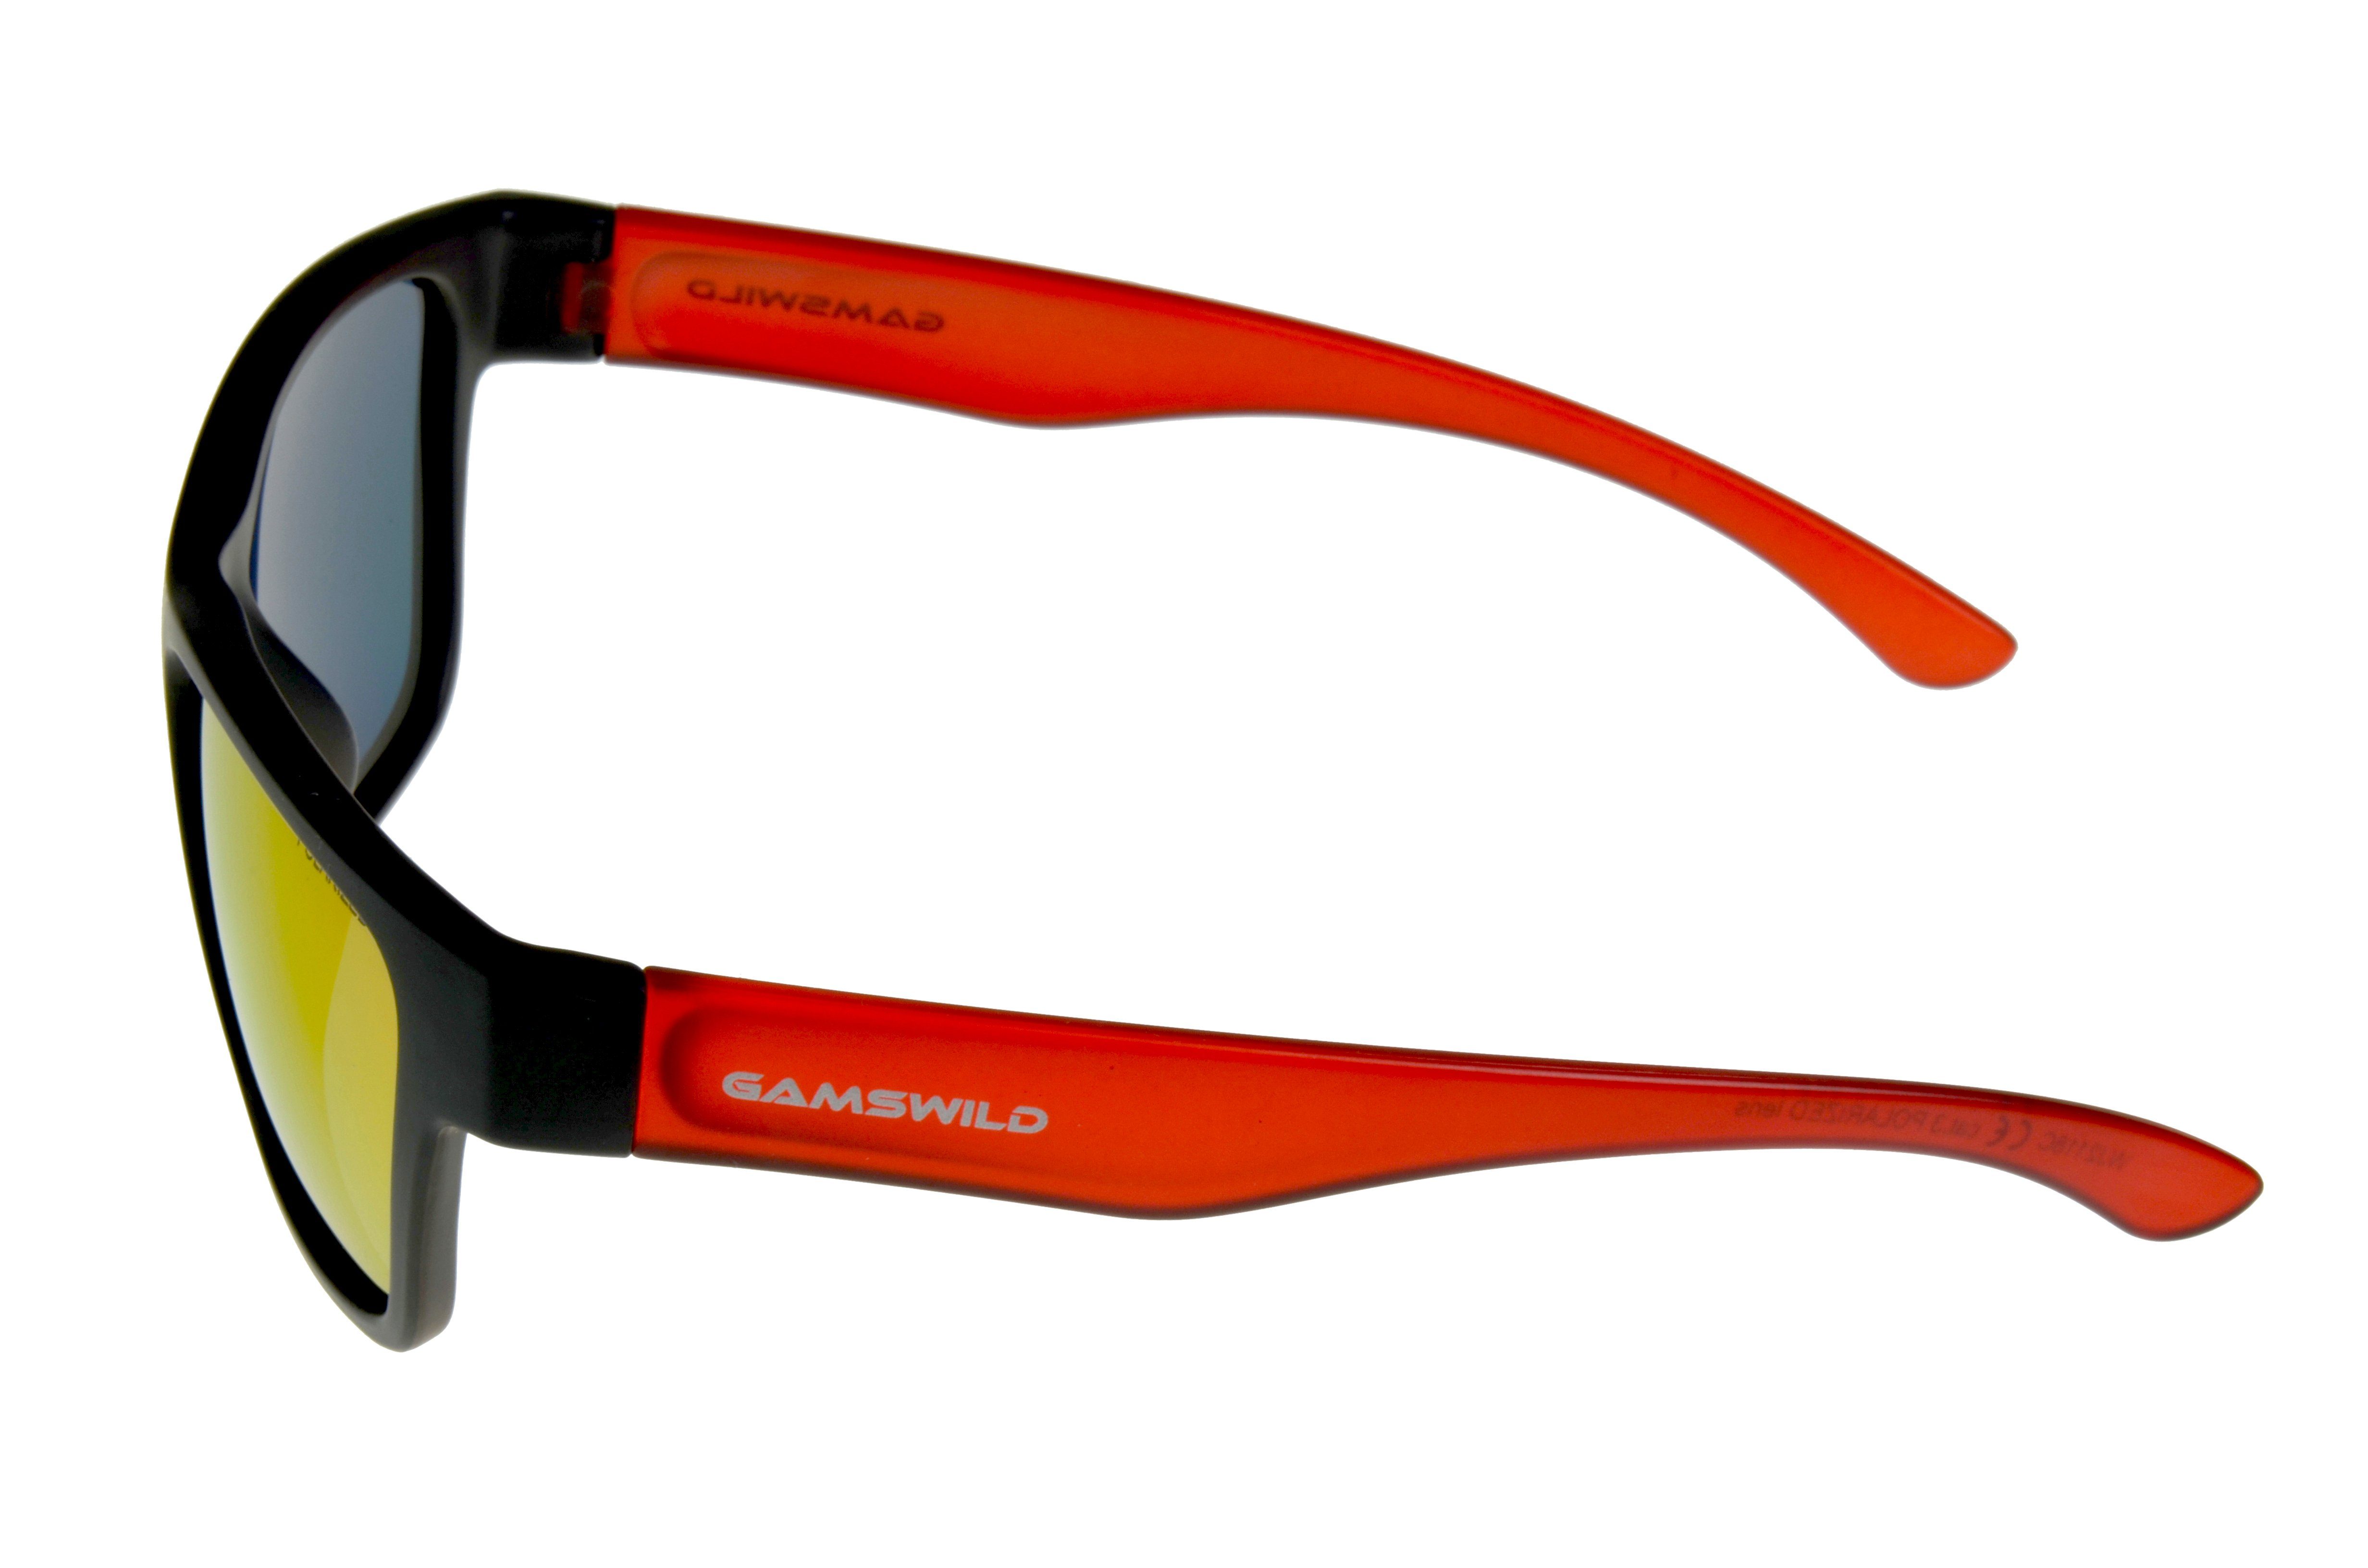 Gamswild Sonnenbrille WJ2118 GAMSKIDS Jugendbrille 8-18 Jahre Rahmen blau Gläser" grün, Unisex Kinderbrille rot, kids NEU halbtransparenter "polarisierte